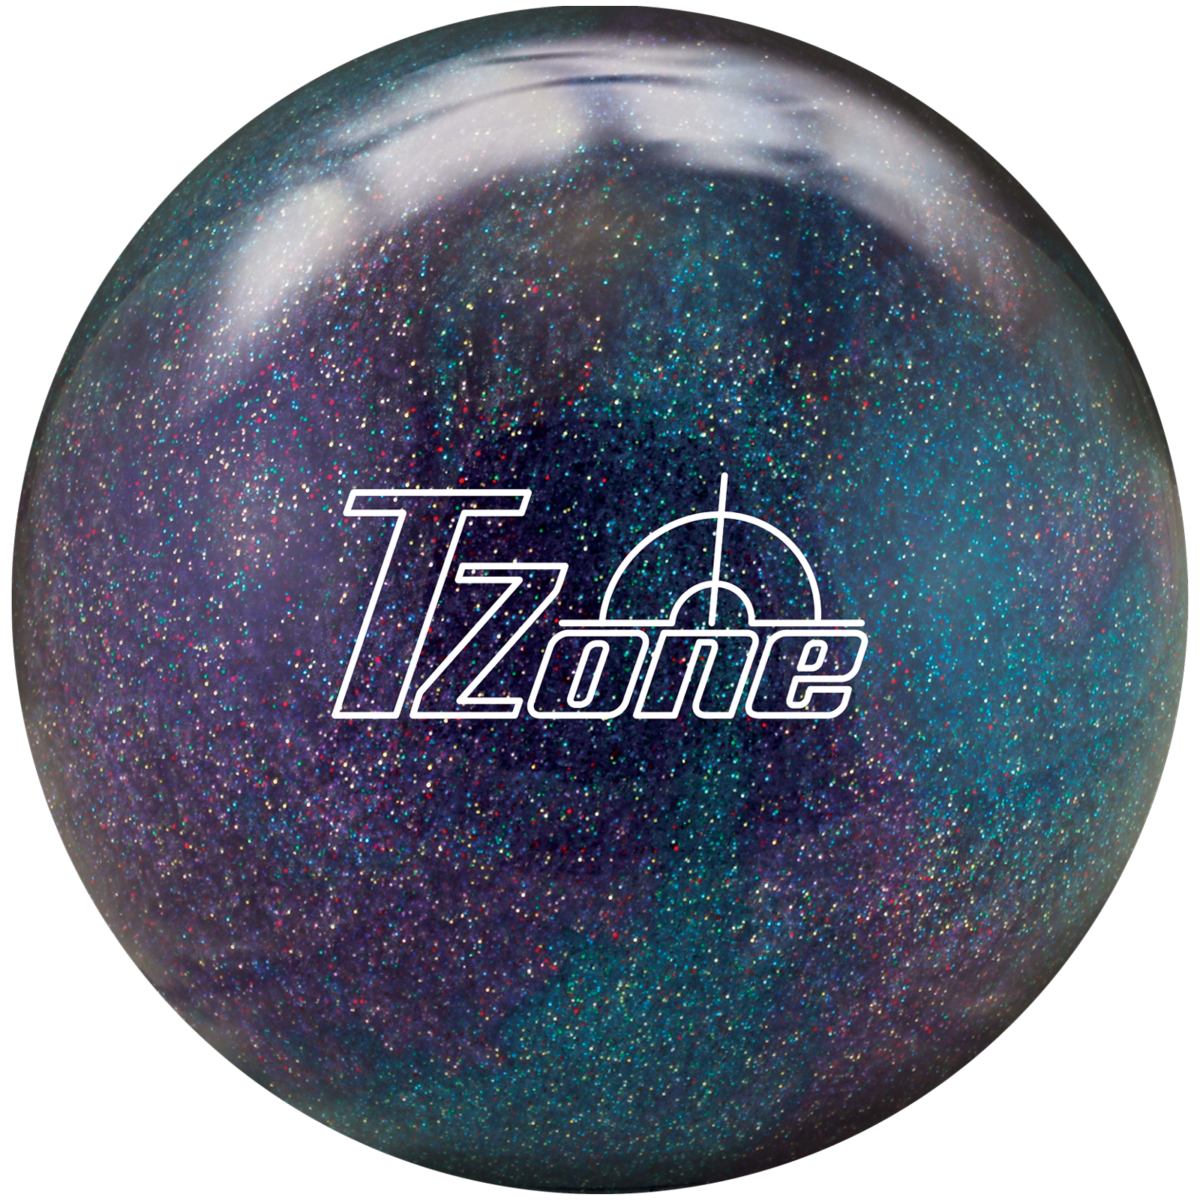 Brunswick Tzone Ultraviolet Sunrise Bowling Ball NIB! 